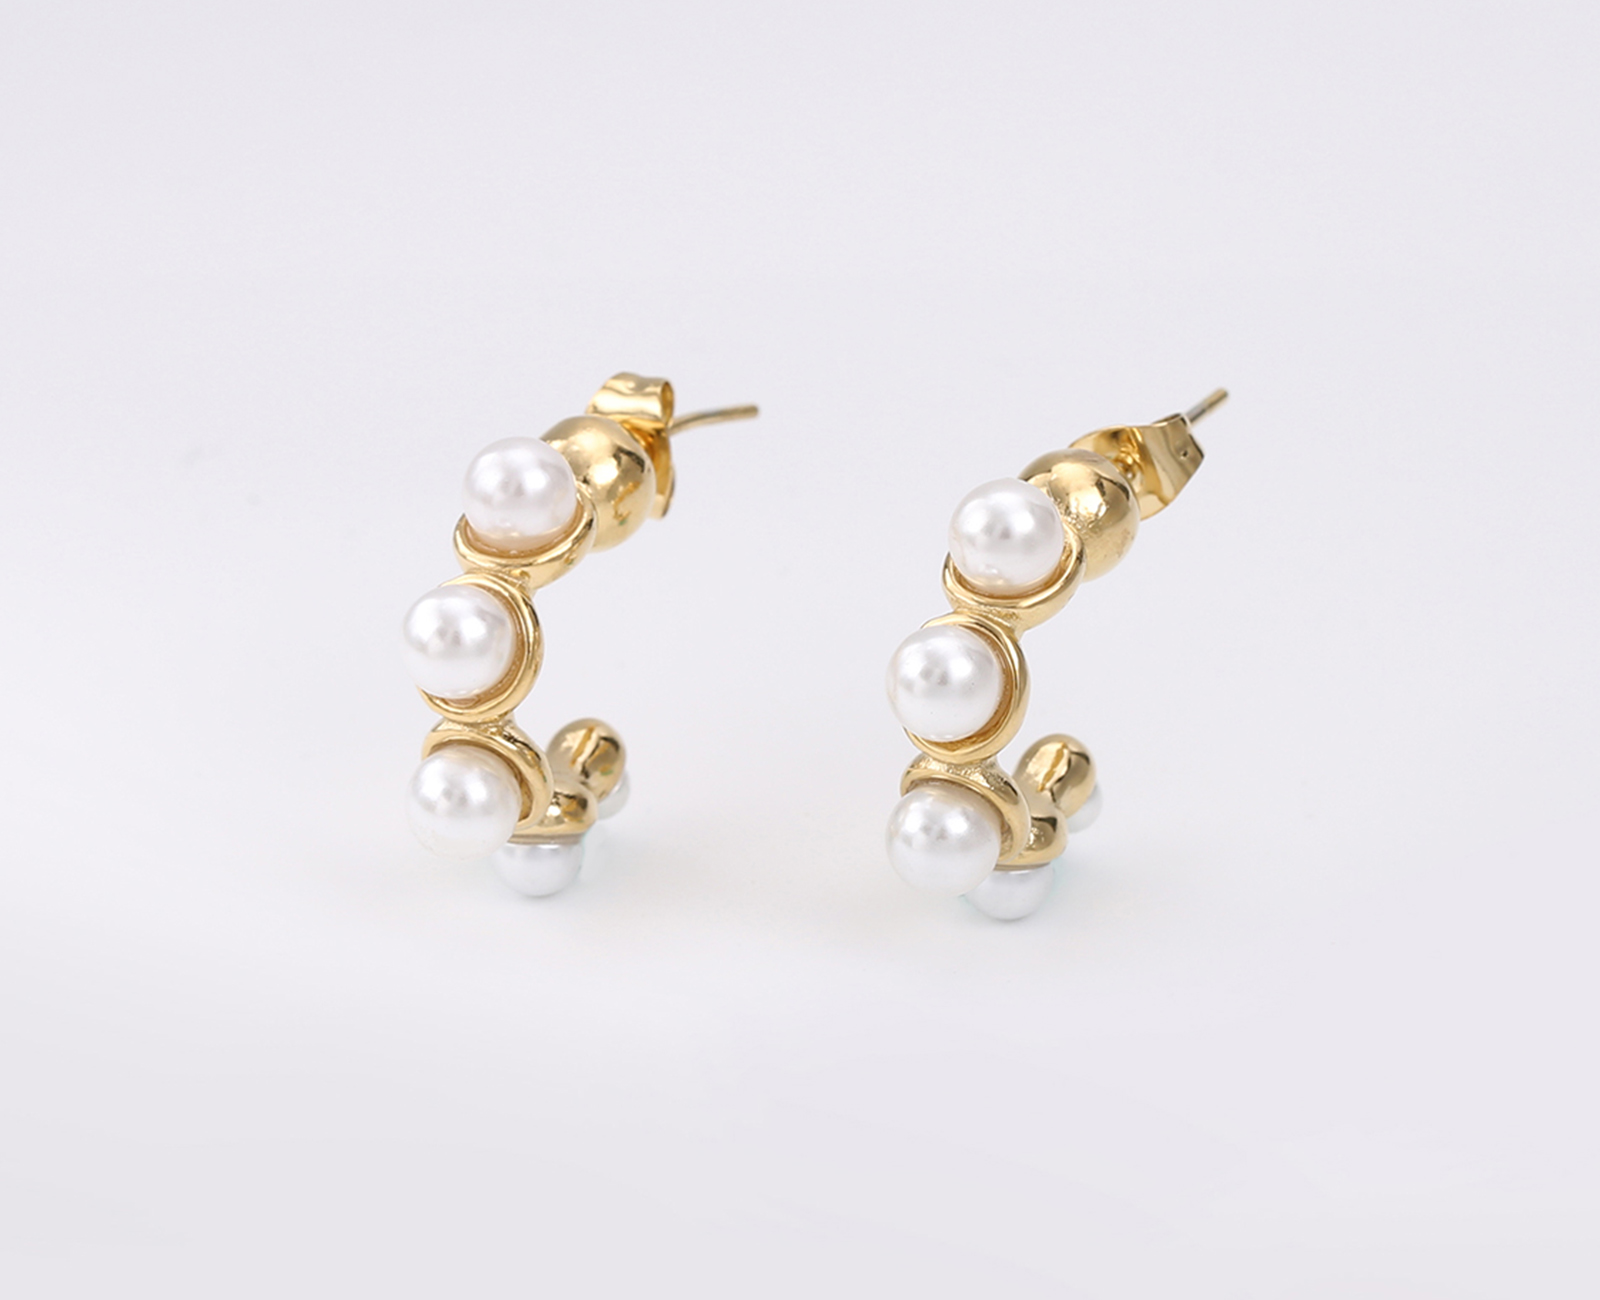 Moda de perlas glamorosas-1b90